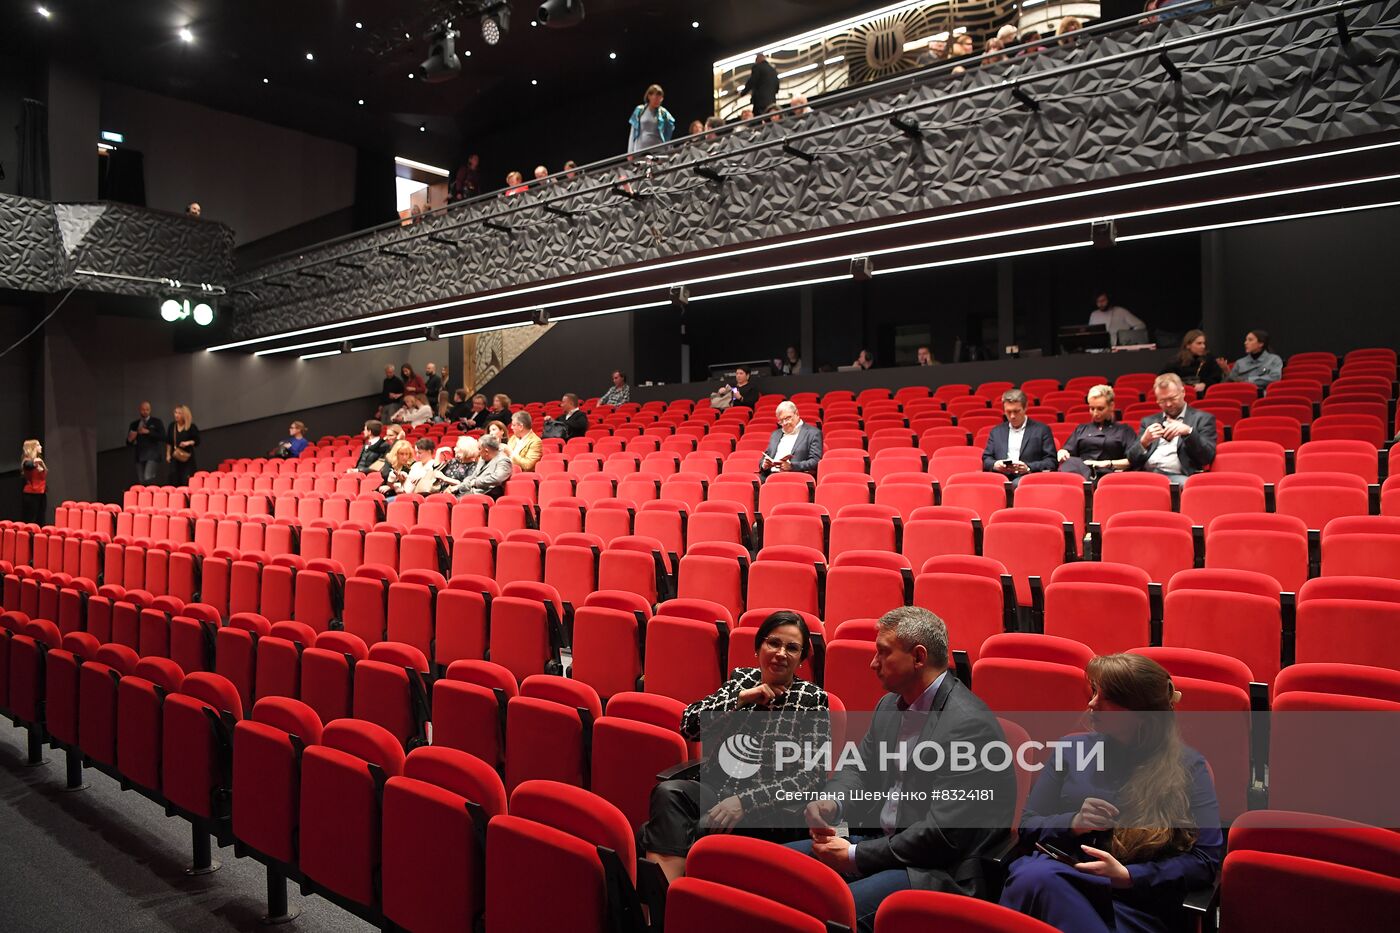 Открытие театра "Маска" в Московском дворце молодежи 